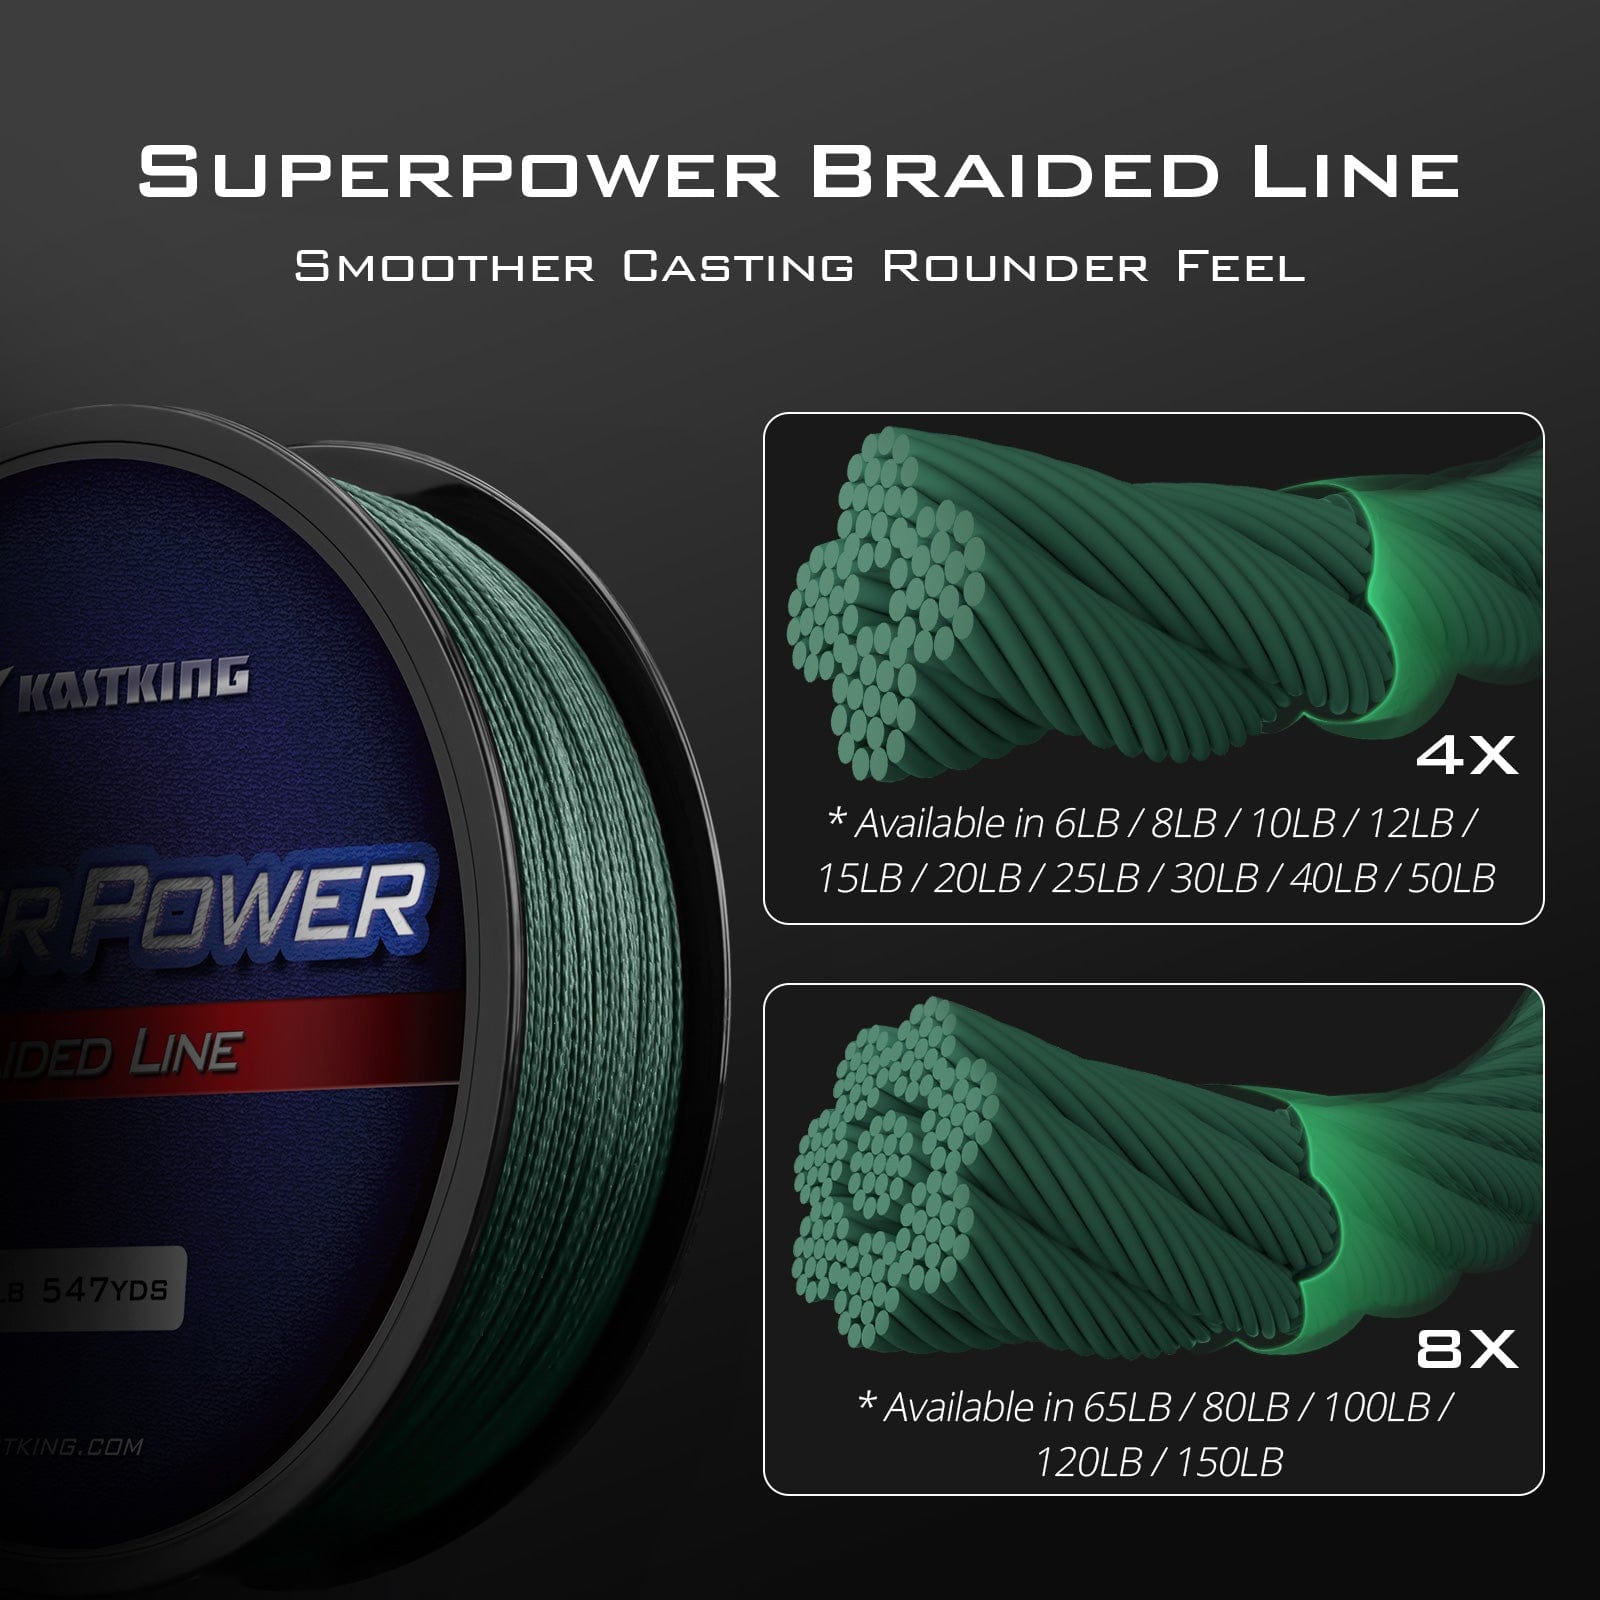 KastKing SuperPower Braid test - FAIL 